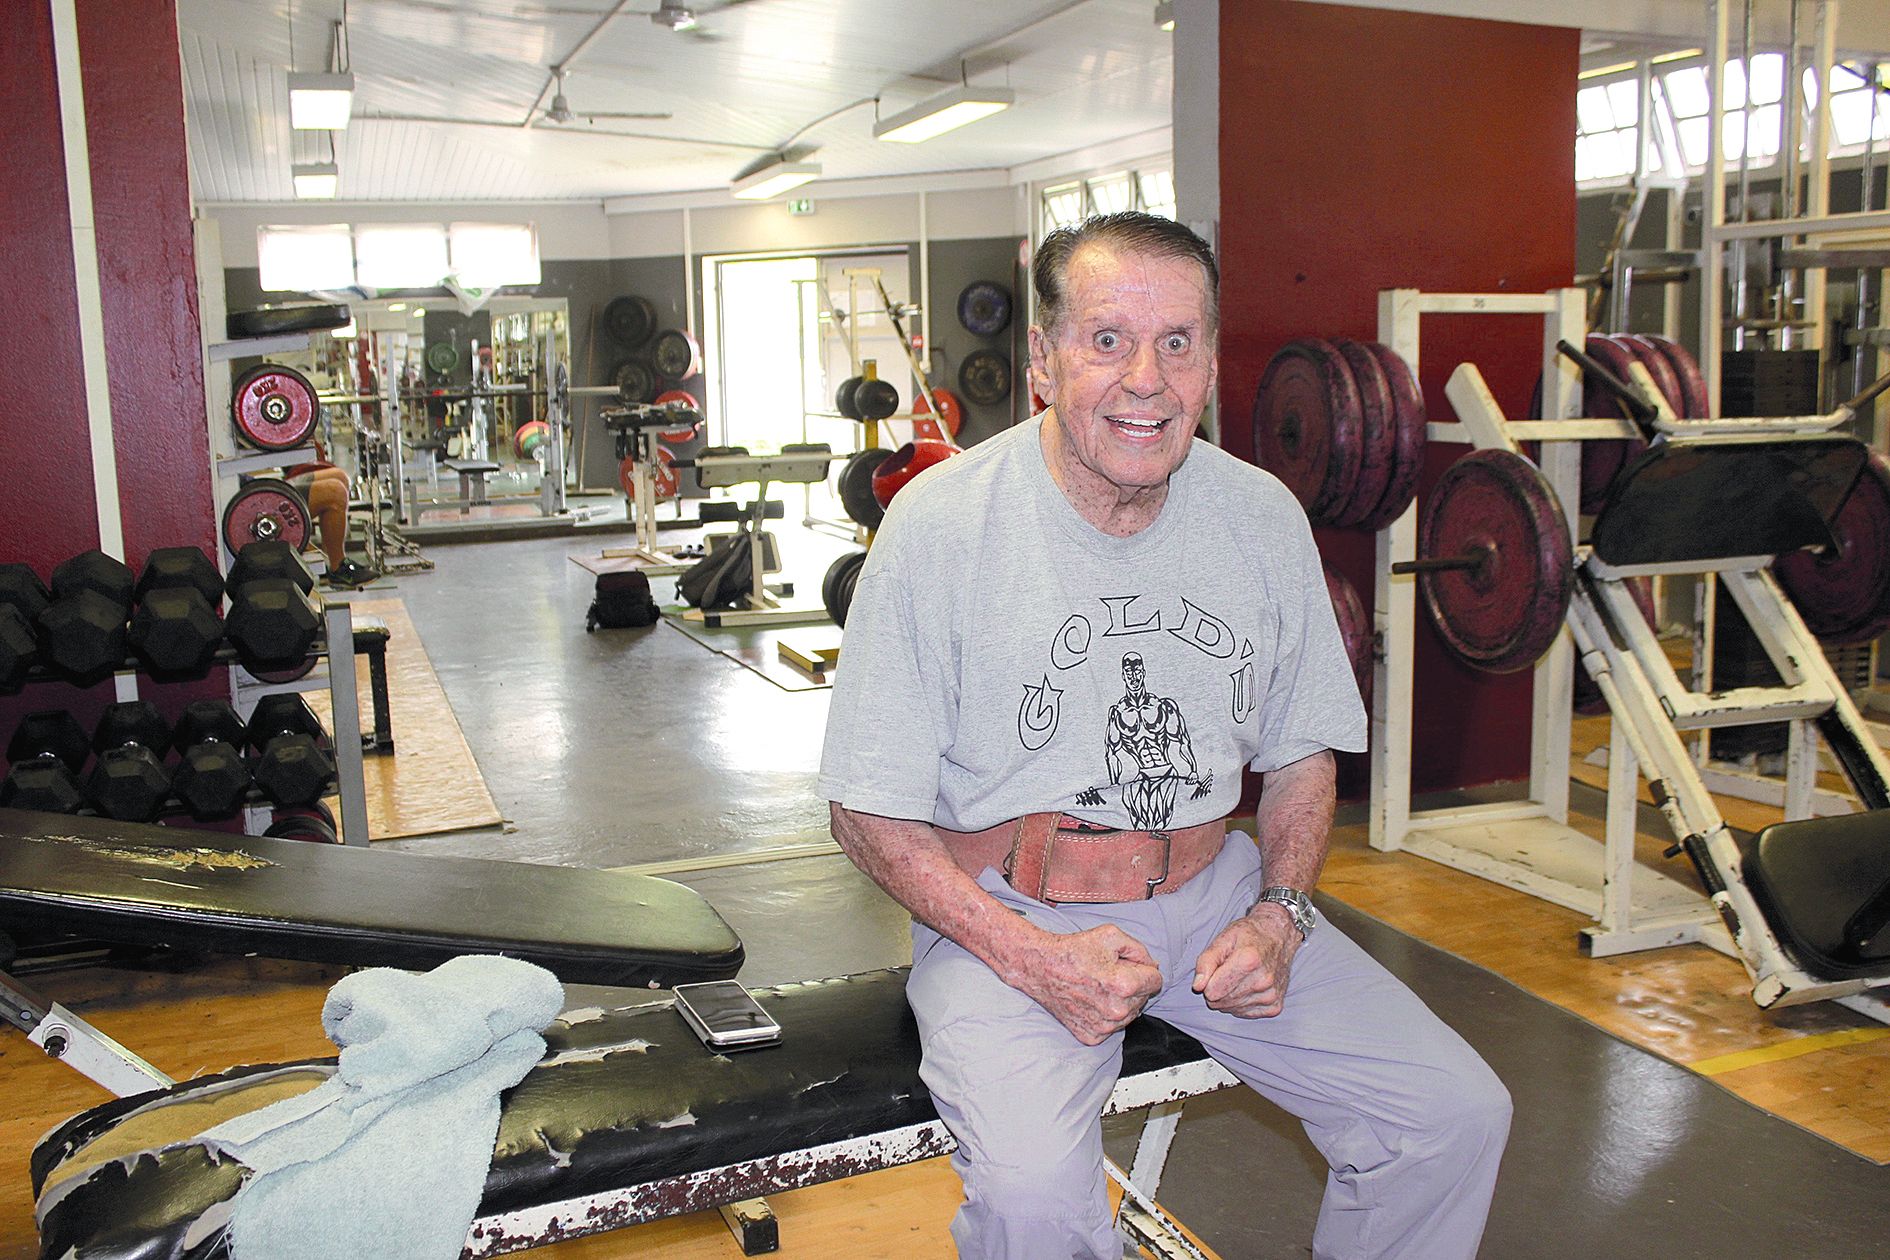 Dumbéa, 2017. Le voici à 85 ans, dans sa salle de musculation à Auteuil. L’an passé, il a gagné les Oceania de force athlétique en catégorie master 4 (plus de 80 ans).